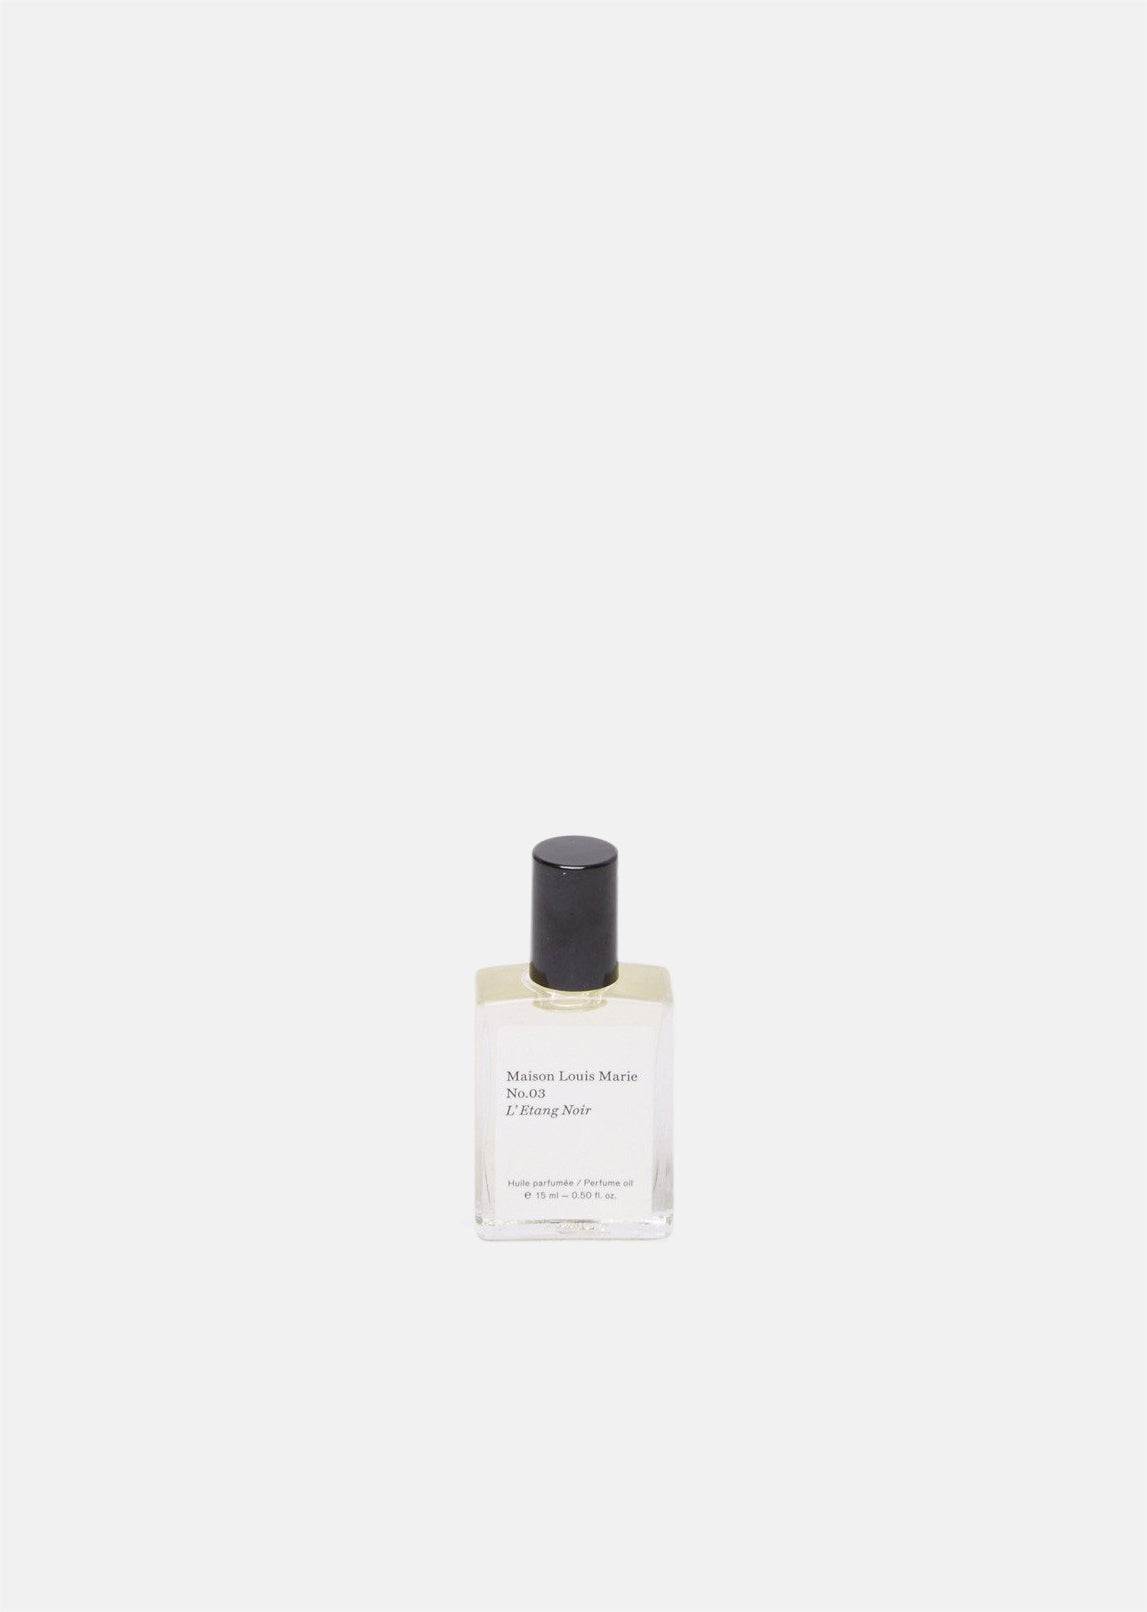 Maison Louis Marie Perfume Oil - No.03 L'Etang Noir